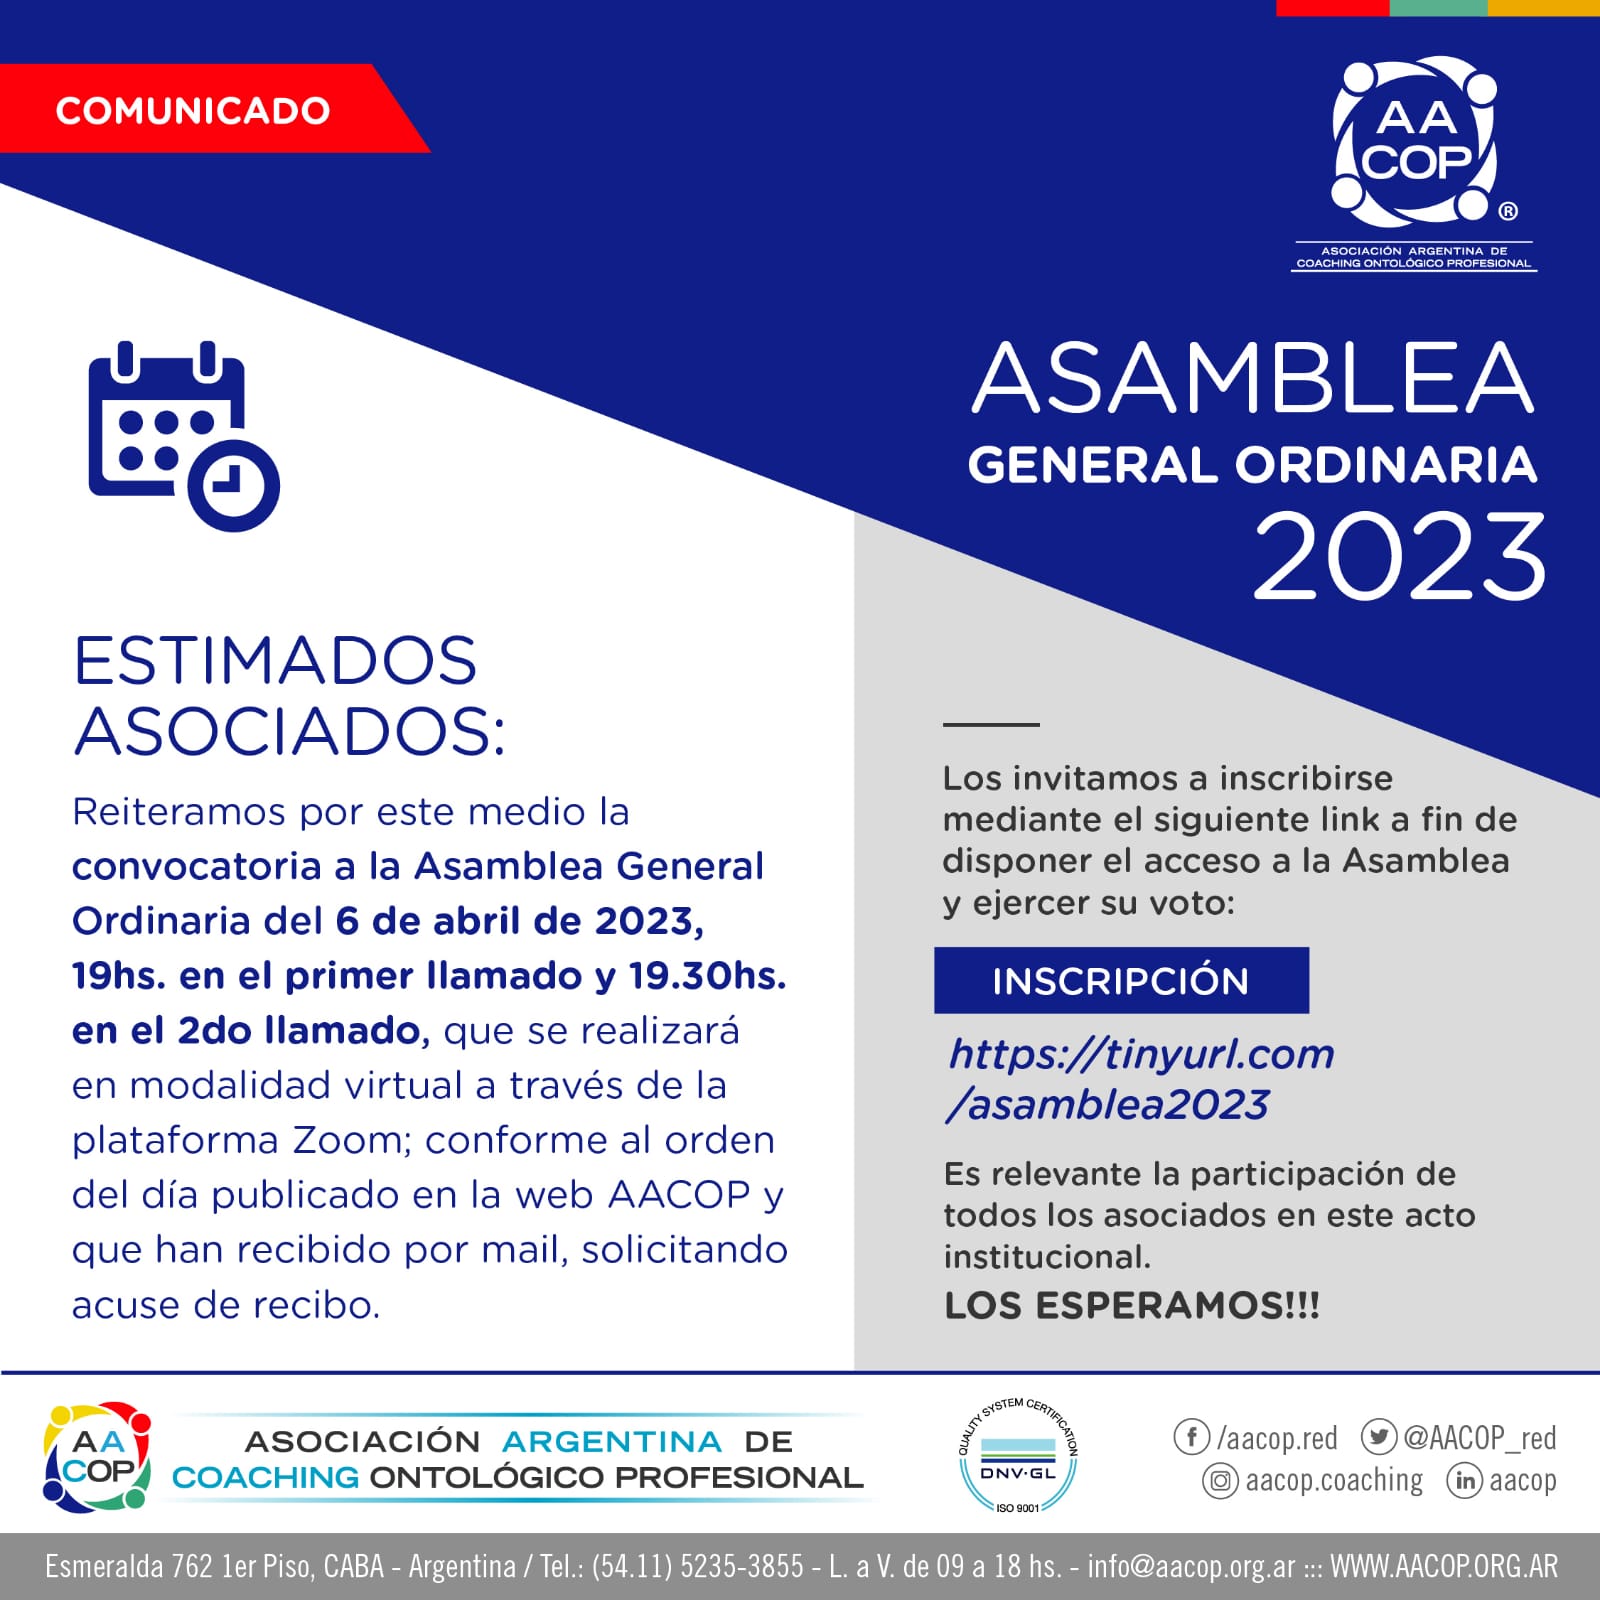 ASAMBLEA GENERAL ORDINARIA 2023 - 6 de abril | imagen